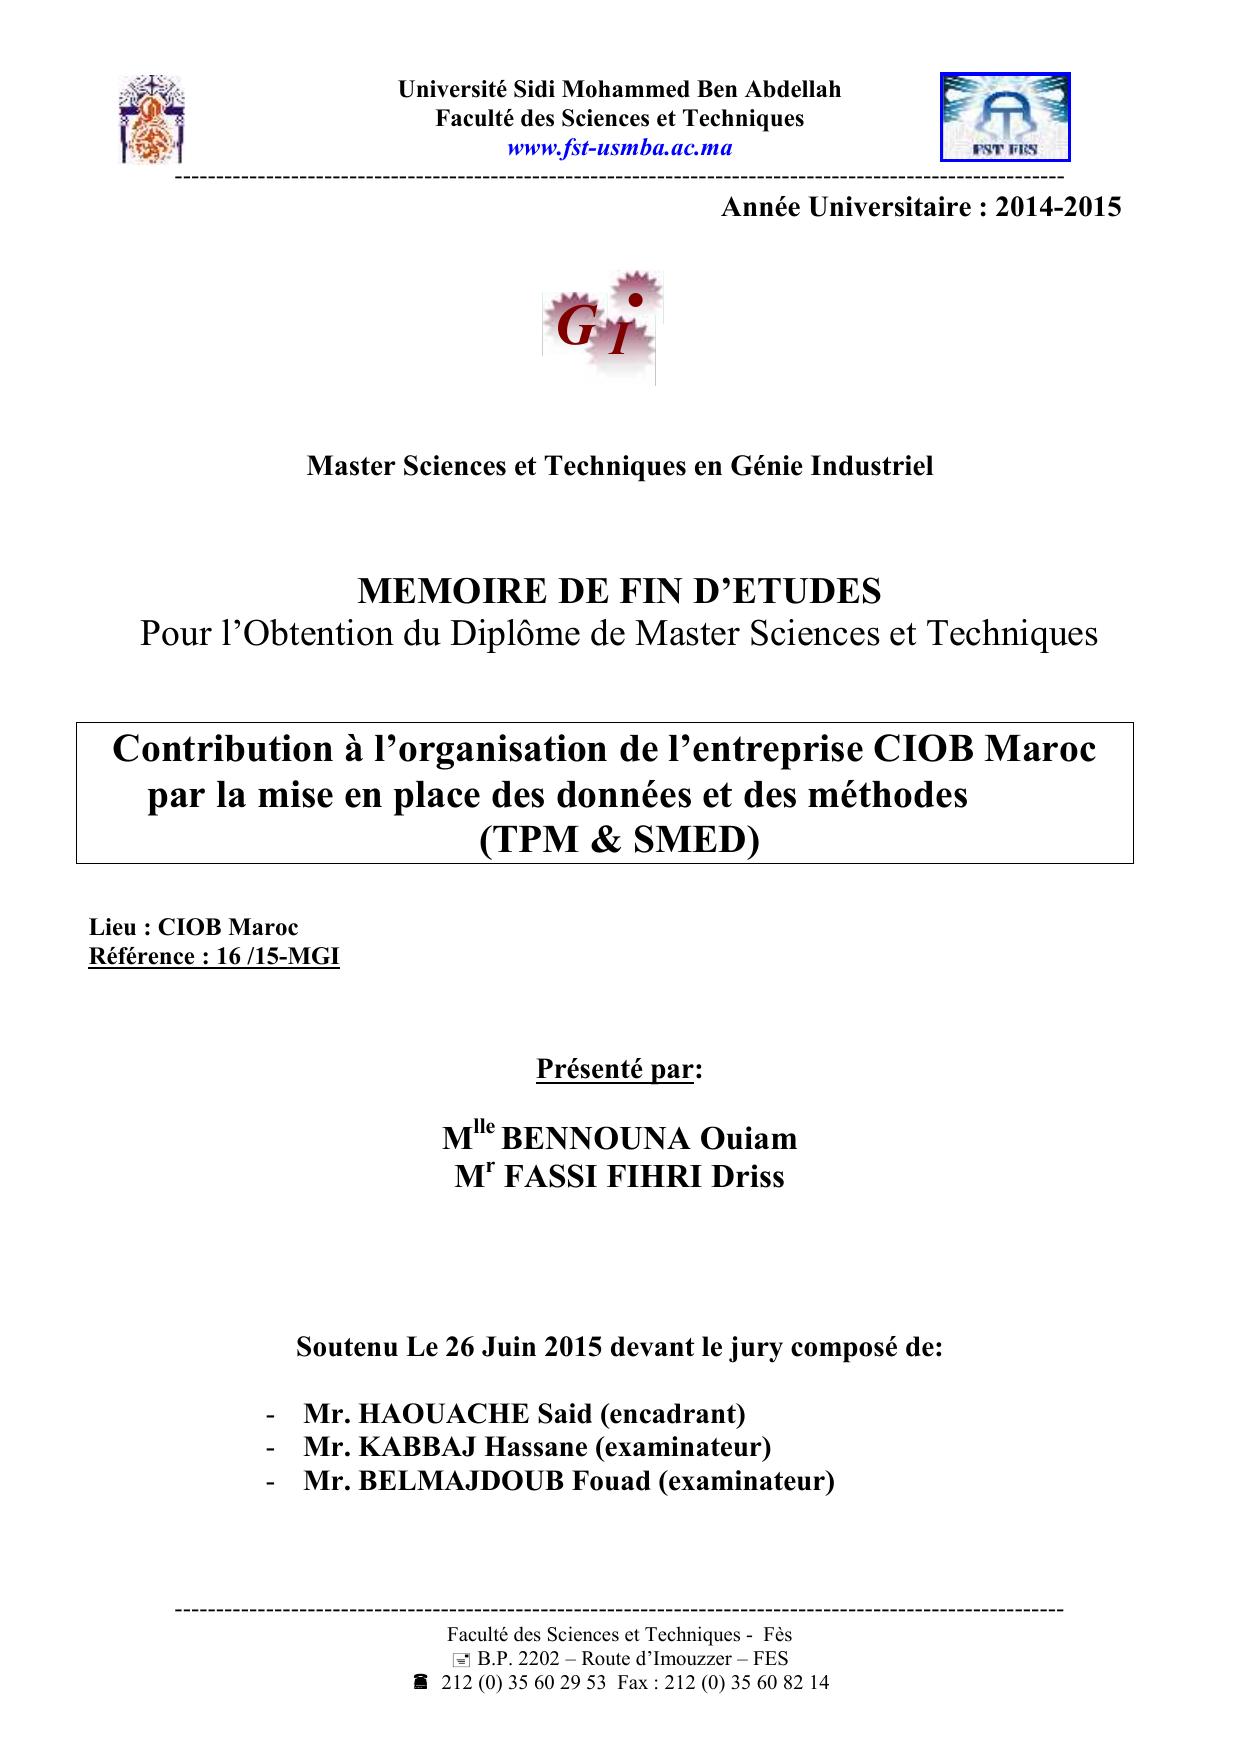 Contribution à l’organisation de l’entreprise CIOB Maroc par la mise en place des données et des méthodes (TPM & SMED)